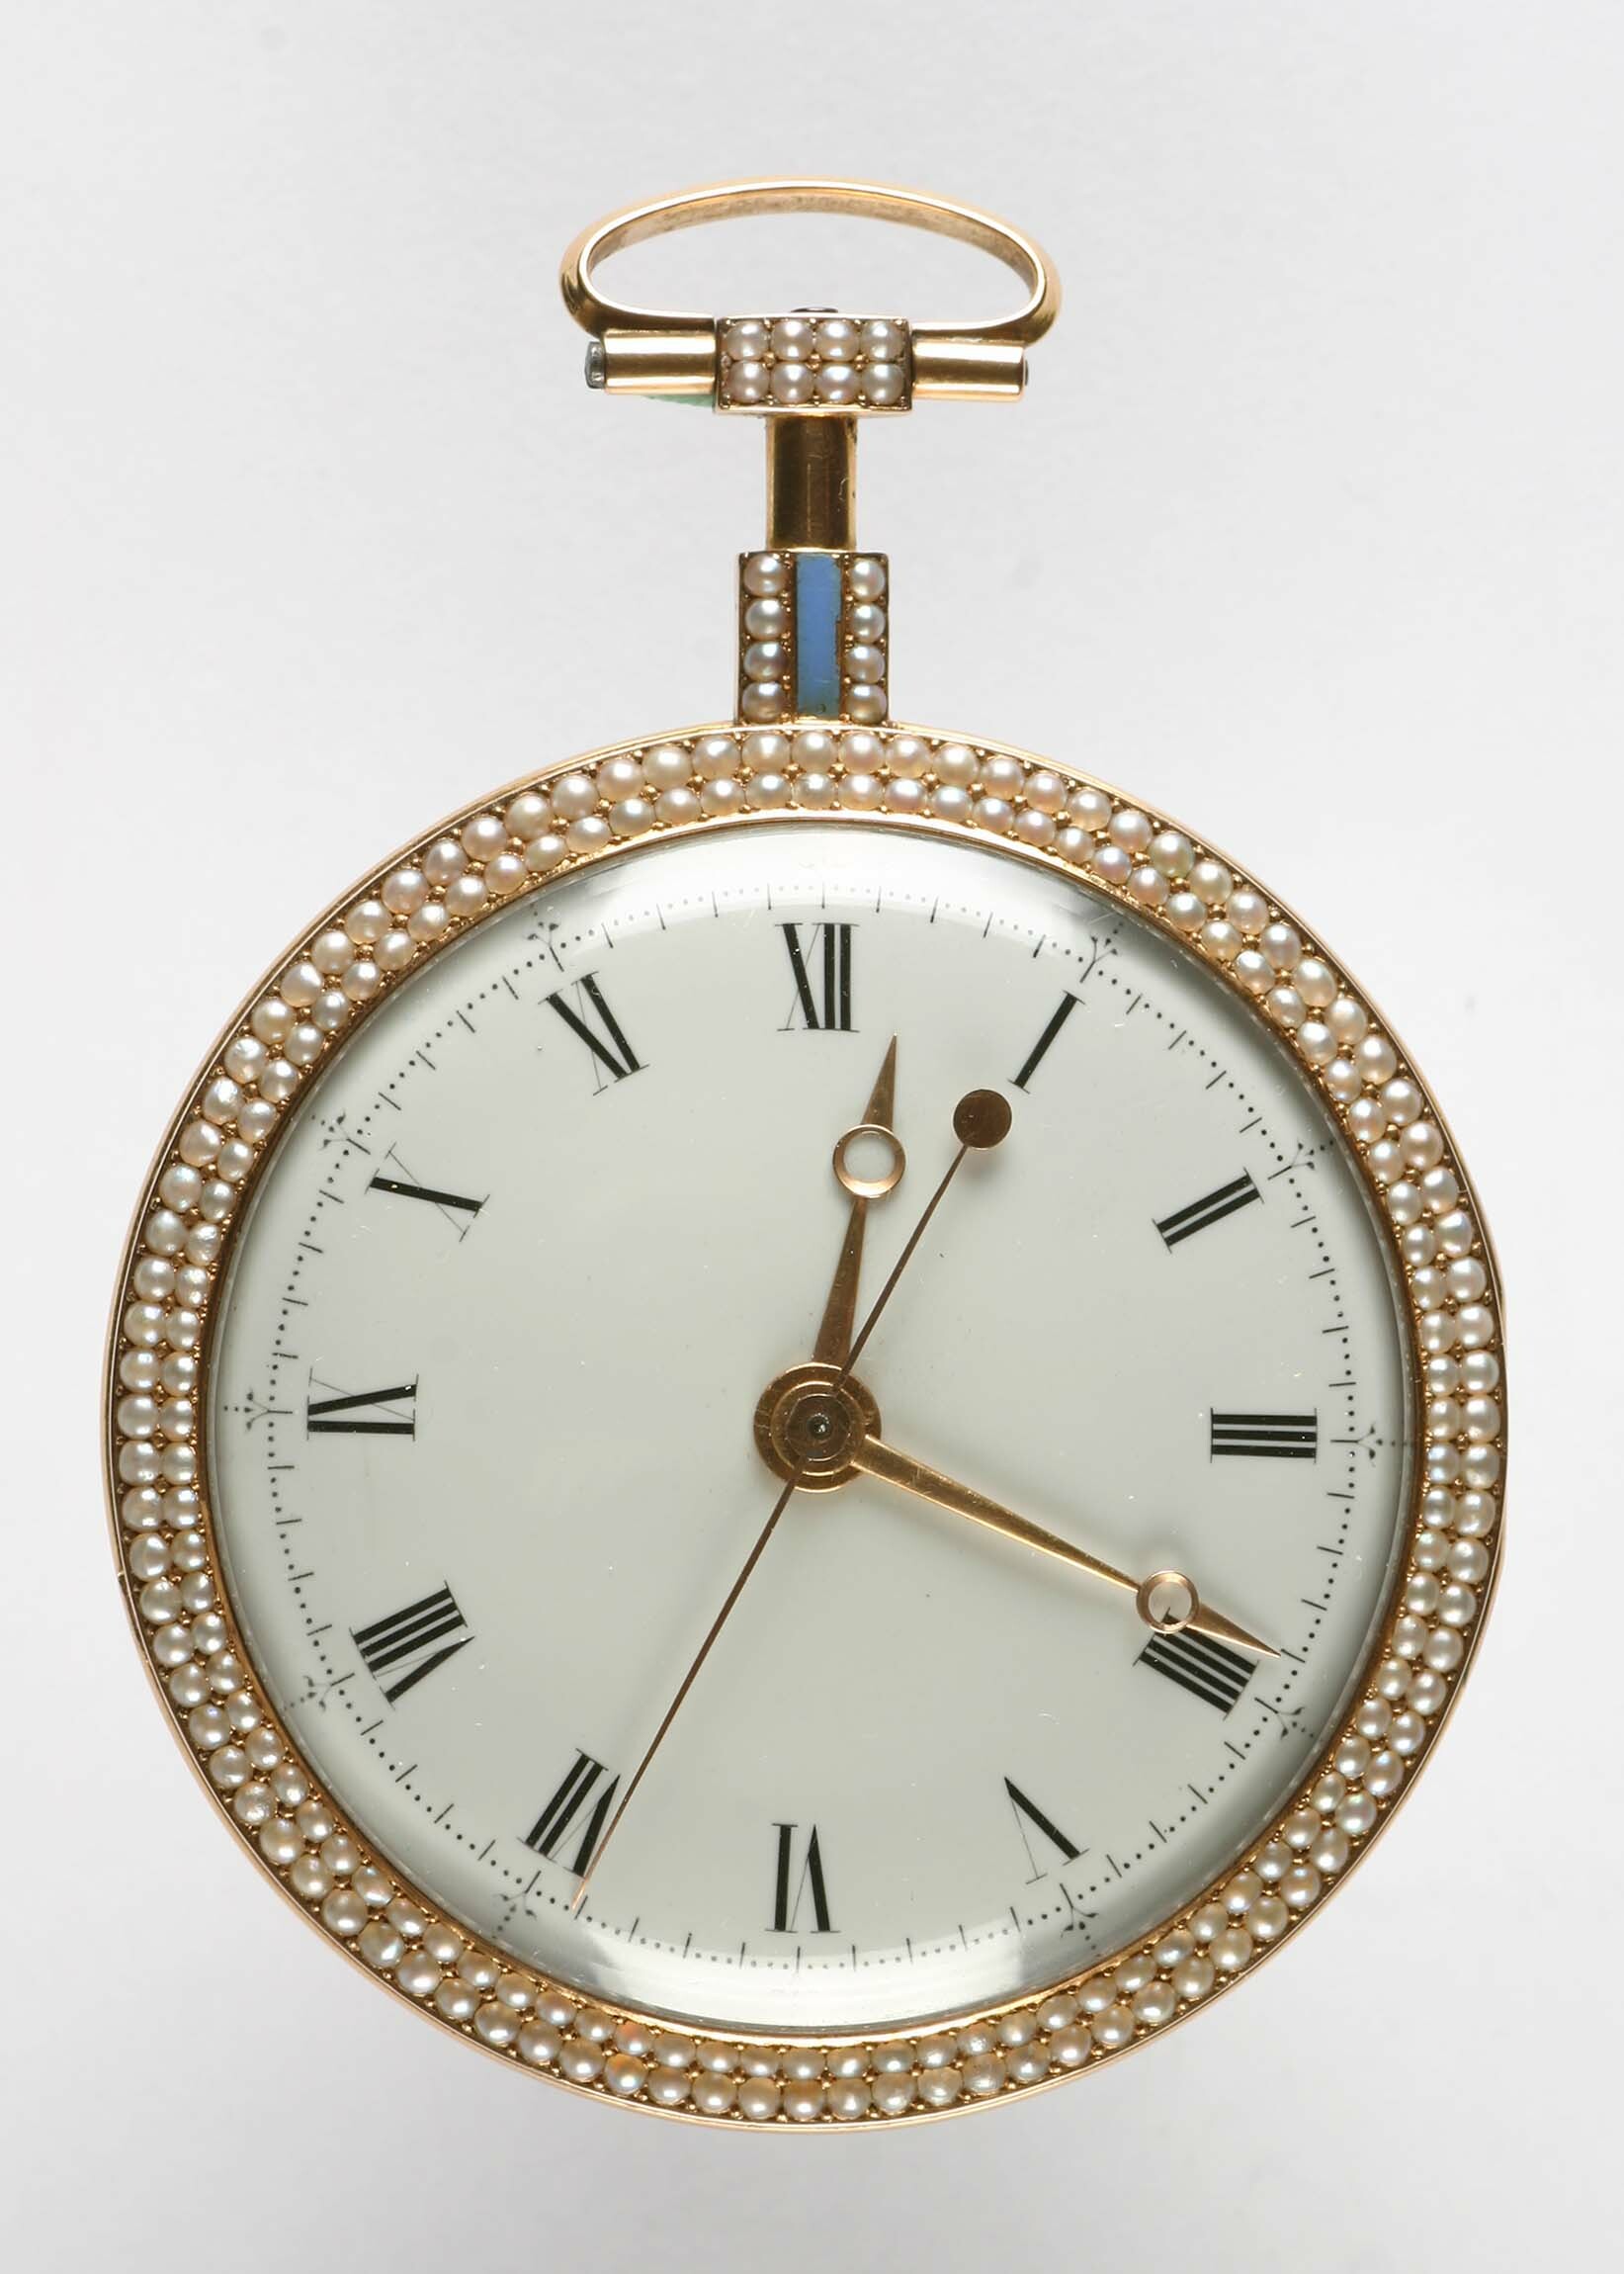 Taschenuhr mit Perlenverzierung, um 1825 (Deutsches Uhrenmuseum CC BY-SA)